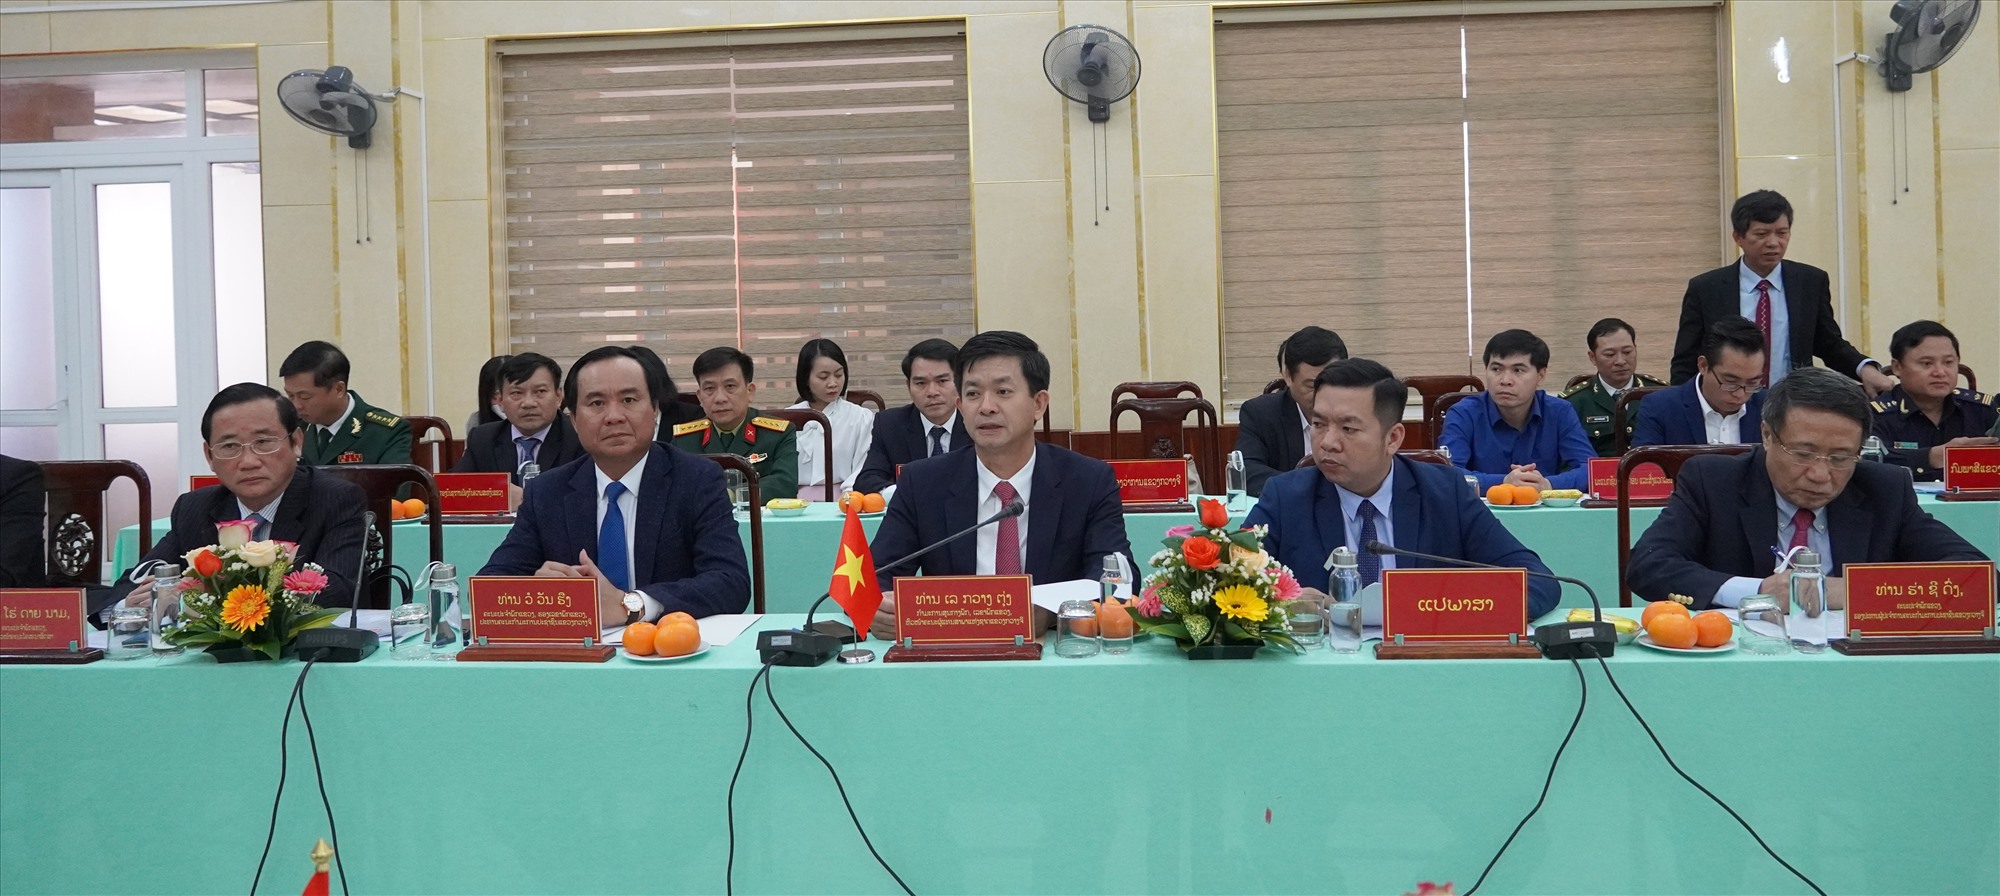 Bí thư Tỉnh ủy Lê Quang Tùng đánh giá cao quan hệ hợp tác ngày càng chặt chẽ và có hiệu quả giữa hai tỉnh - Ảnh: L.N